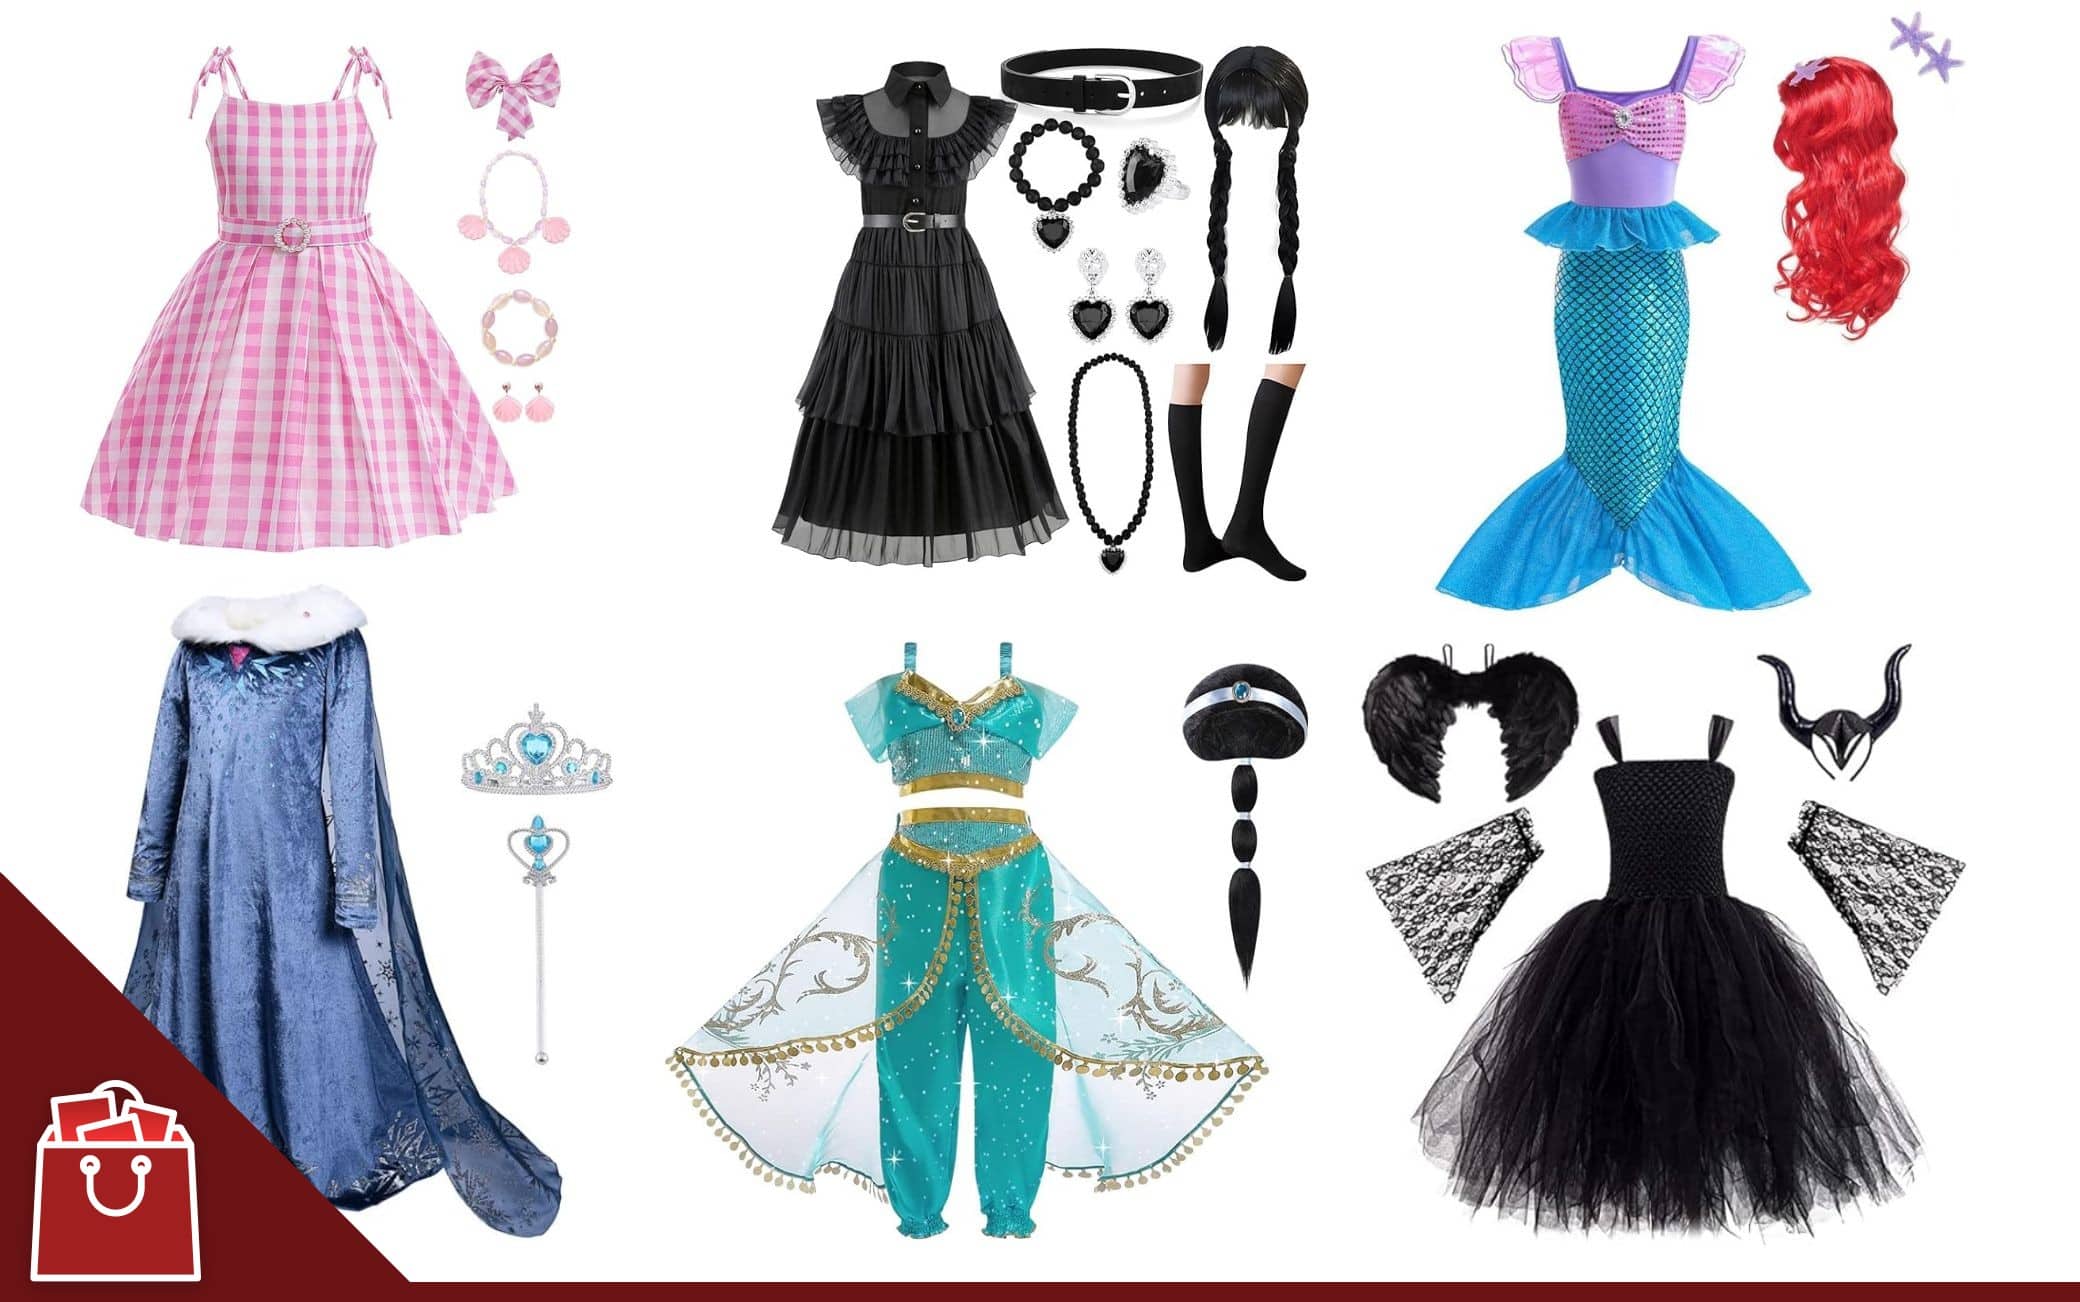 Vestiti di Carnevale, 12 idee per i costumi delle bambine da